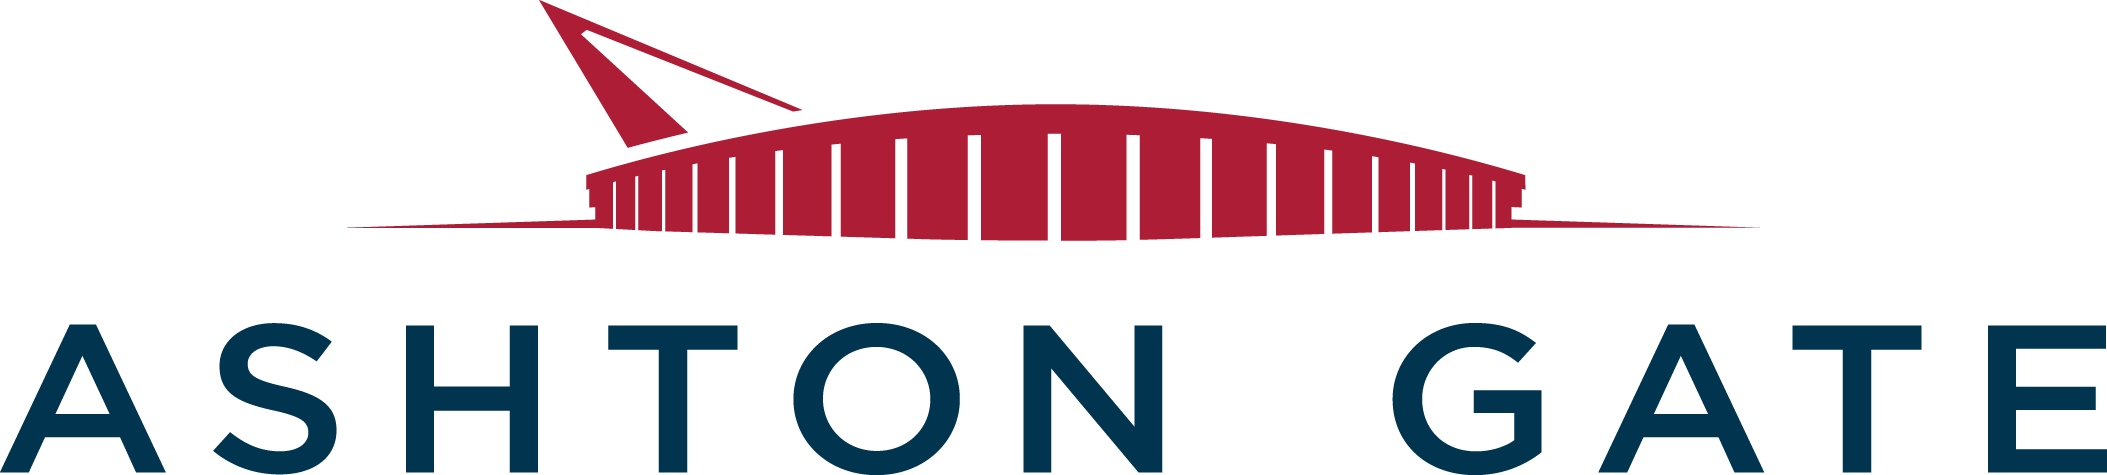 ashton gate logo